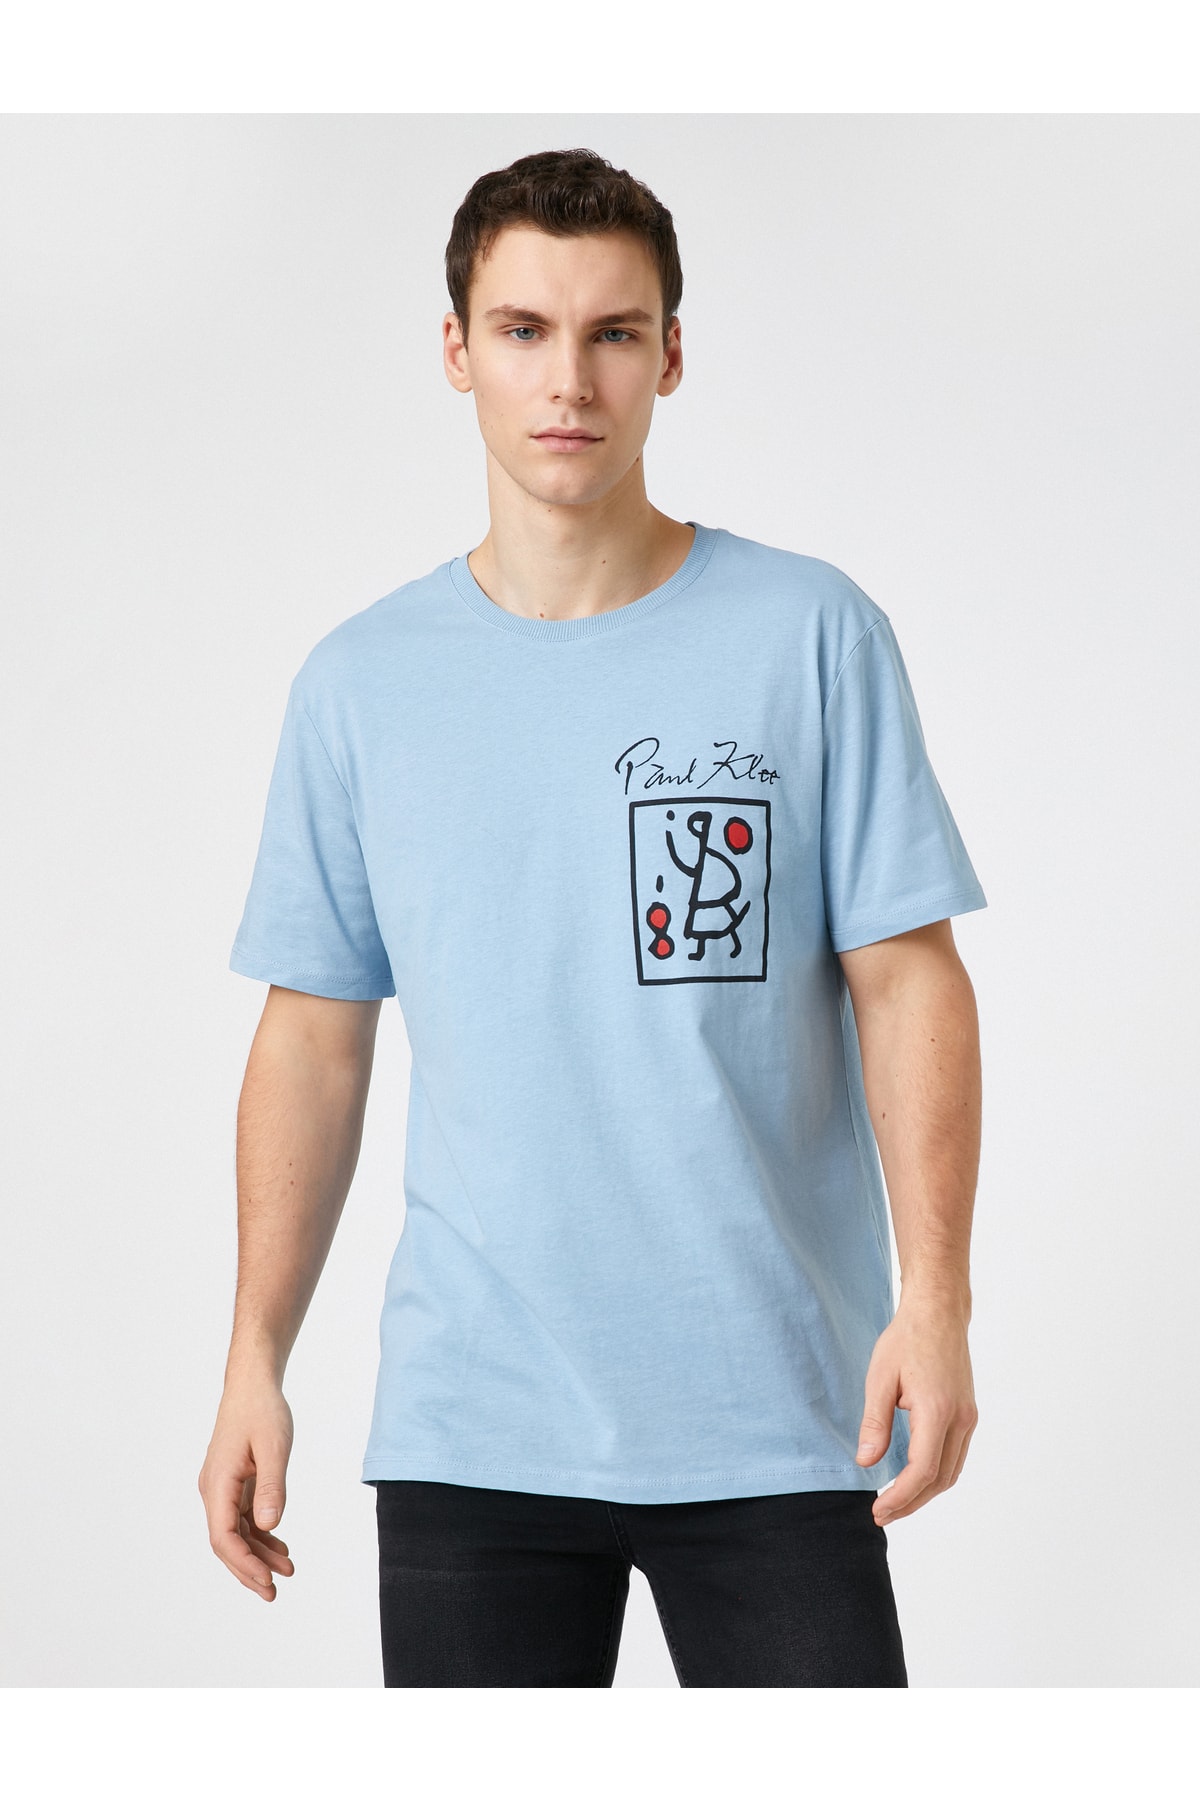 Koton Paul Klee tričko licencovaná potlač